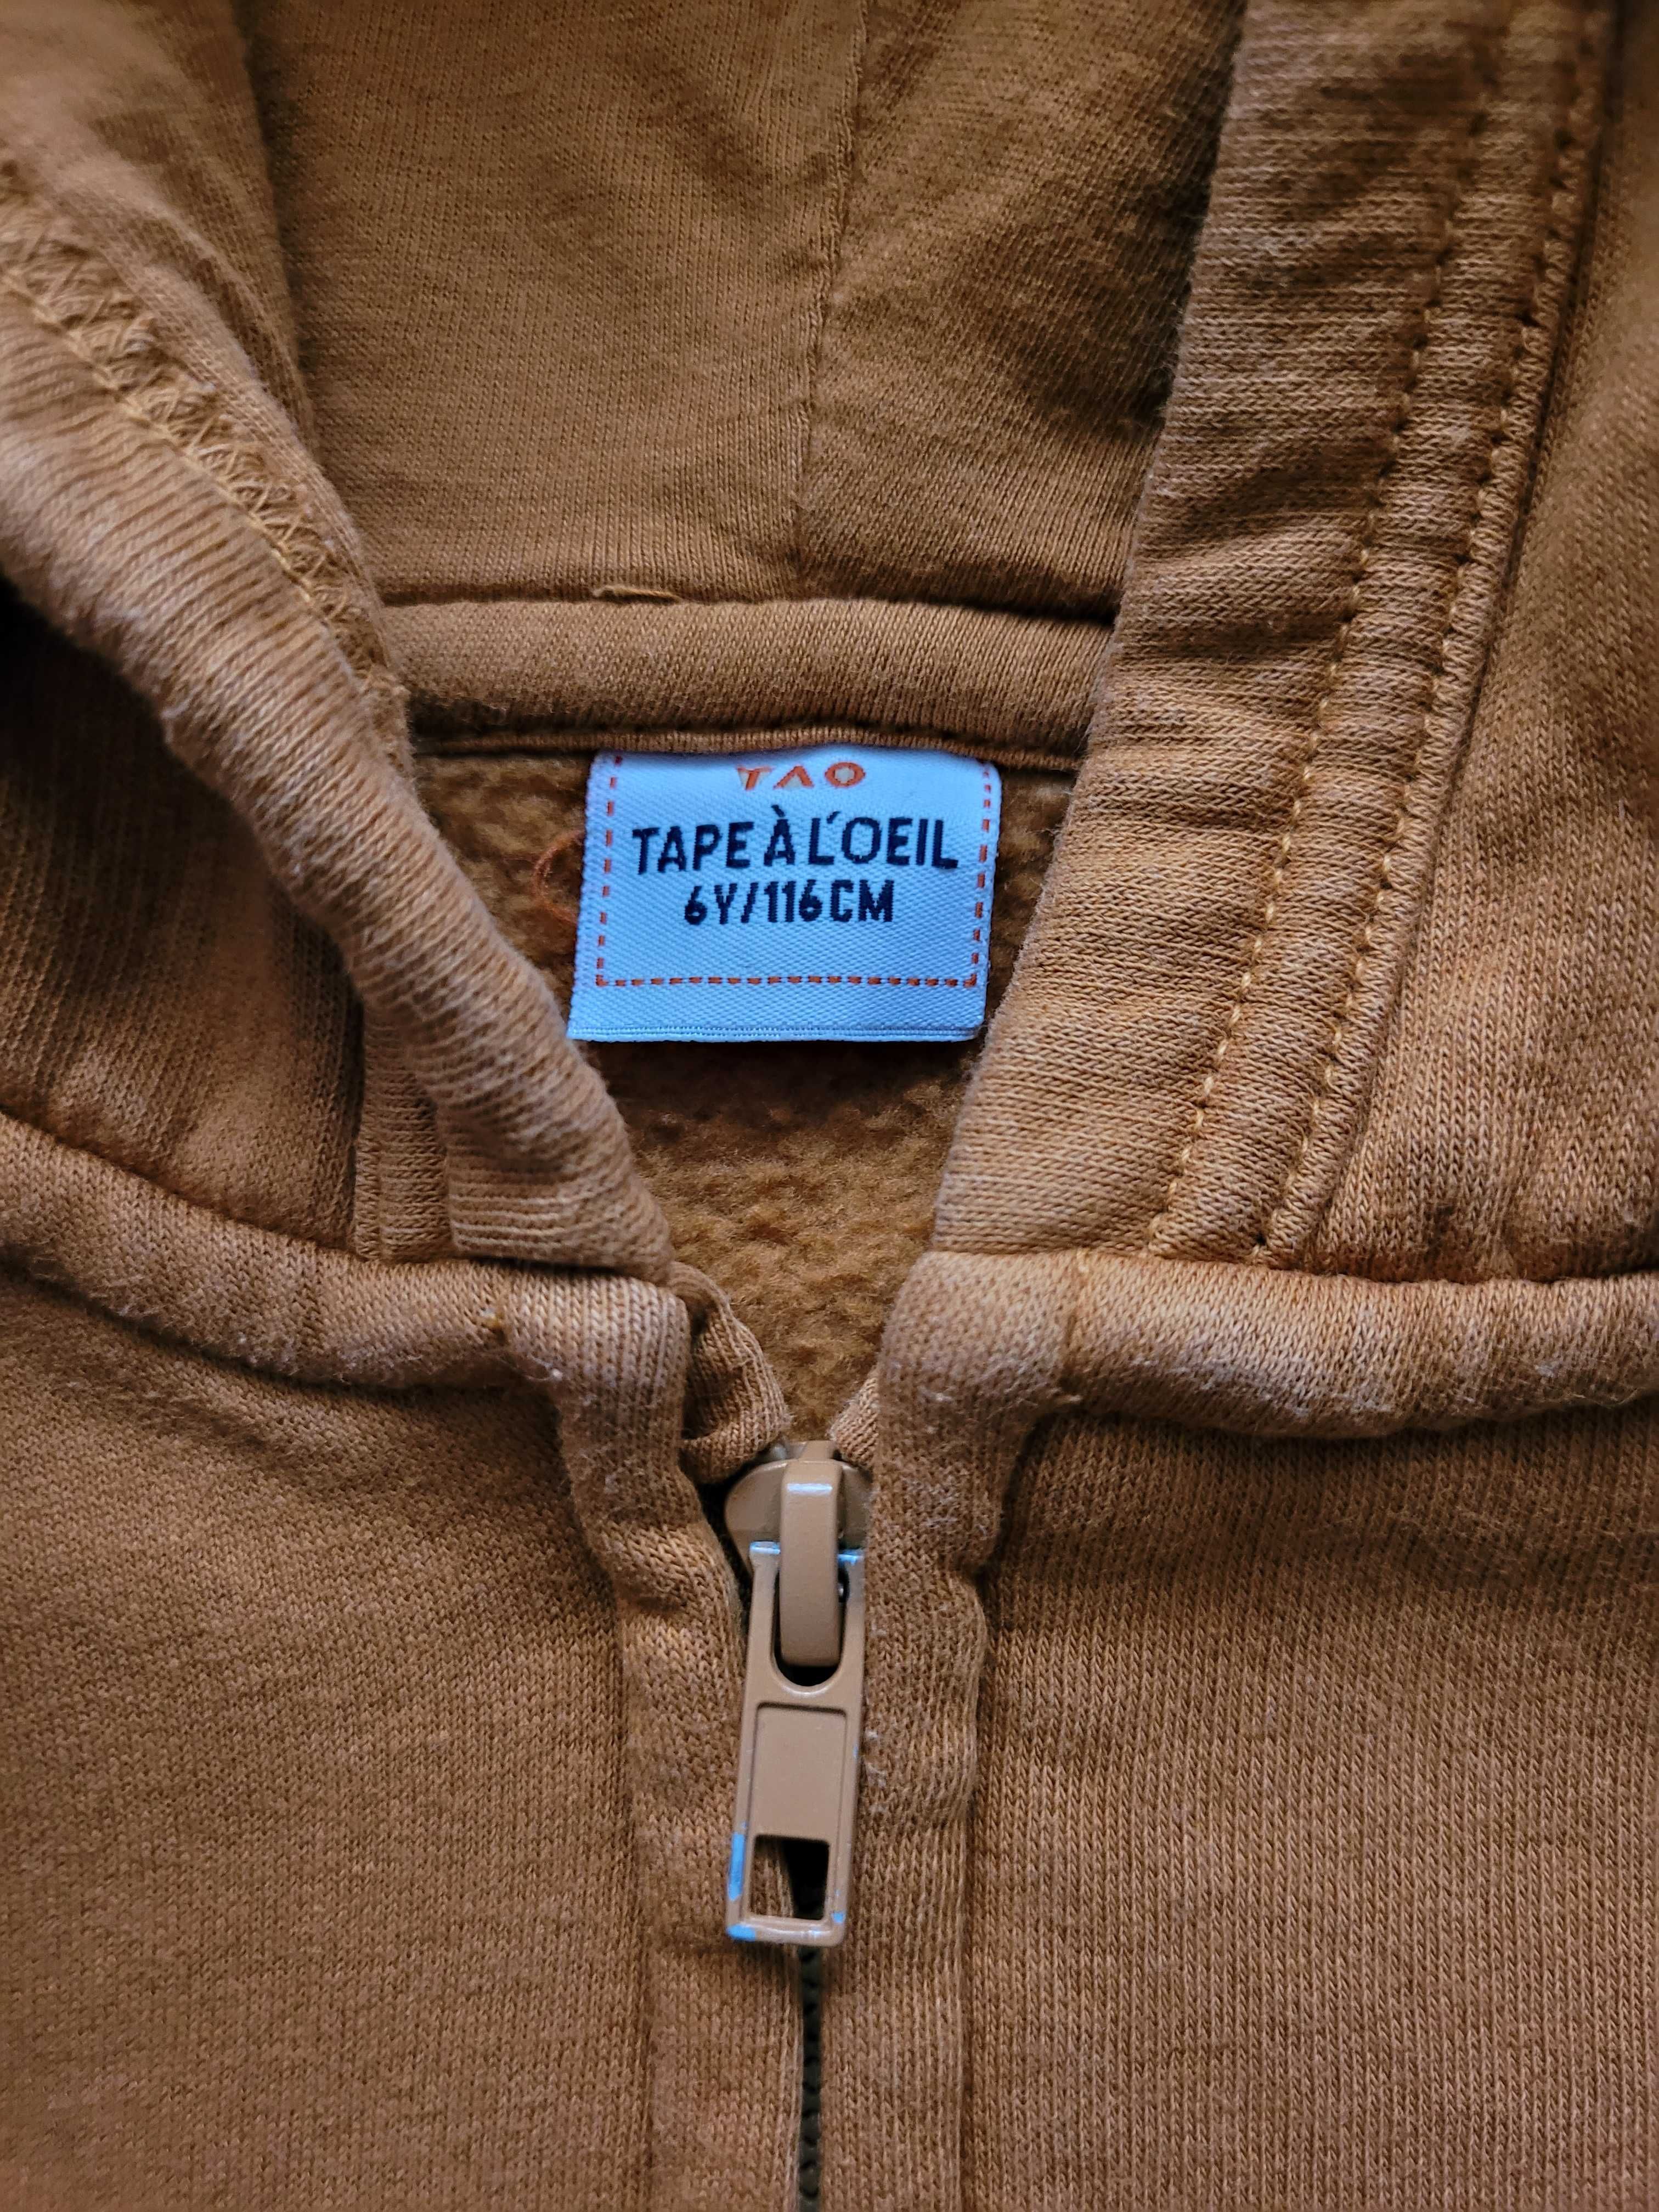 Bluza chłopięca z kapturem i suwakiem, Tape a l'Oeil (TAO), 116